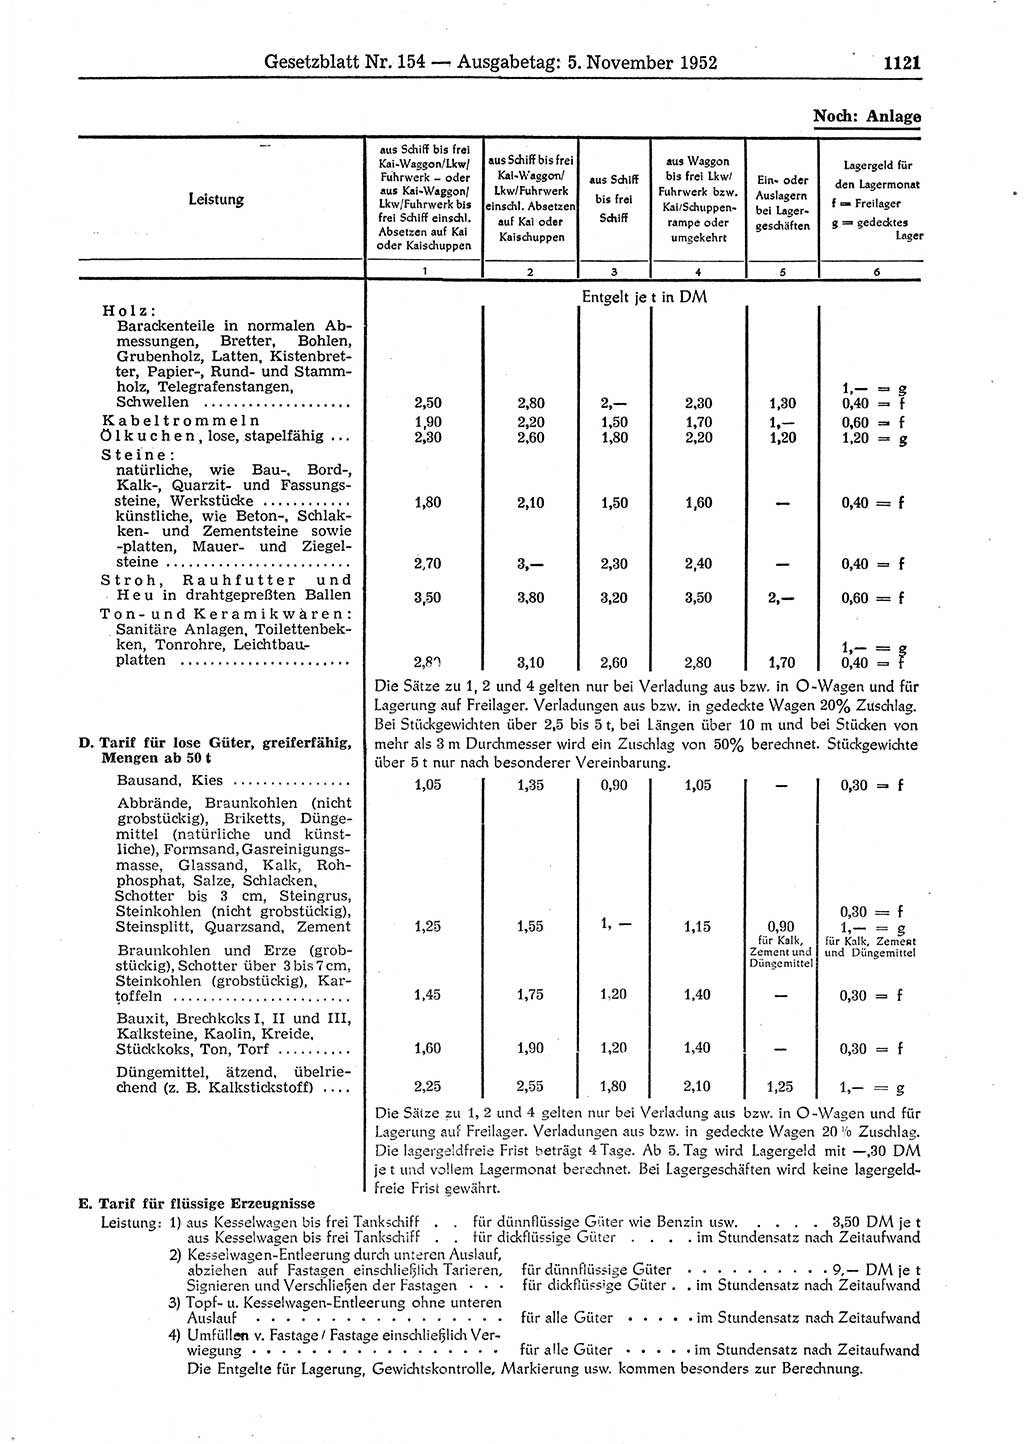 Gesetzblatt (GBl.) der Deutschen Demokratischen Republik (DDR) 1952, Seite 1121 (GBl. DDR 1952, S. 1121)